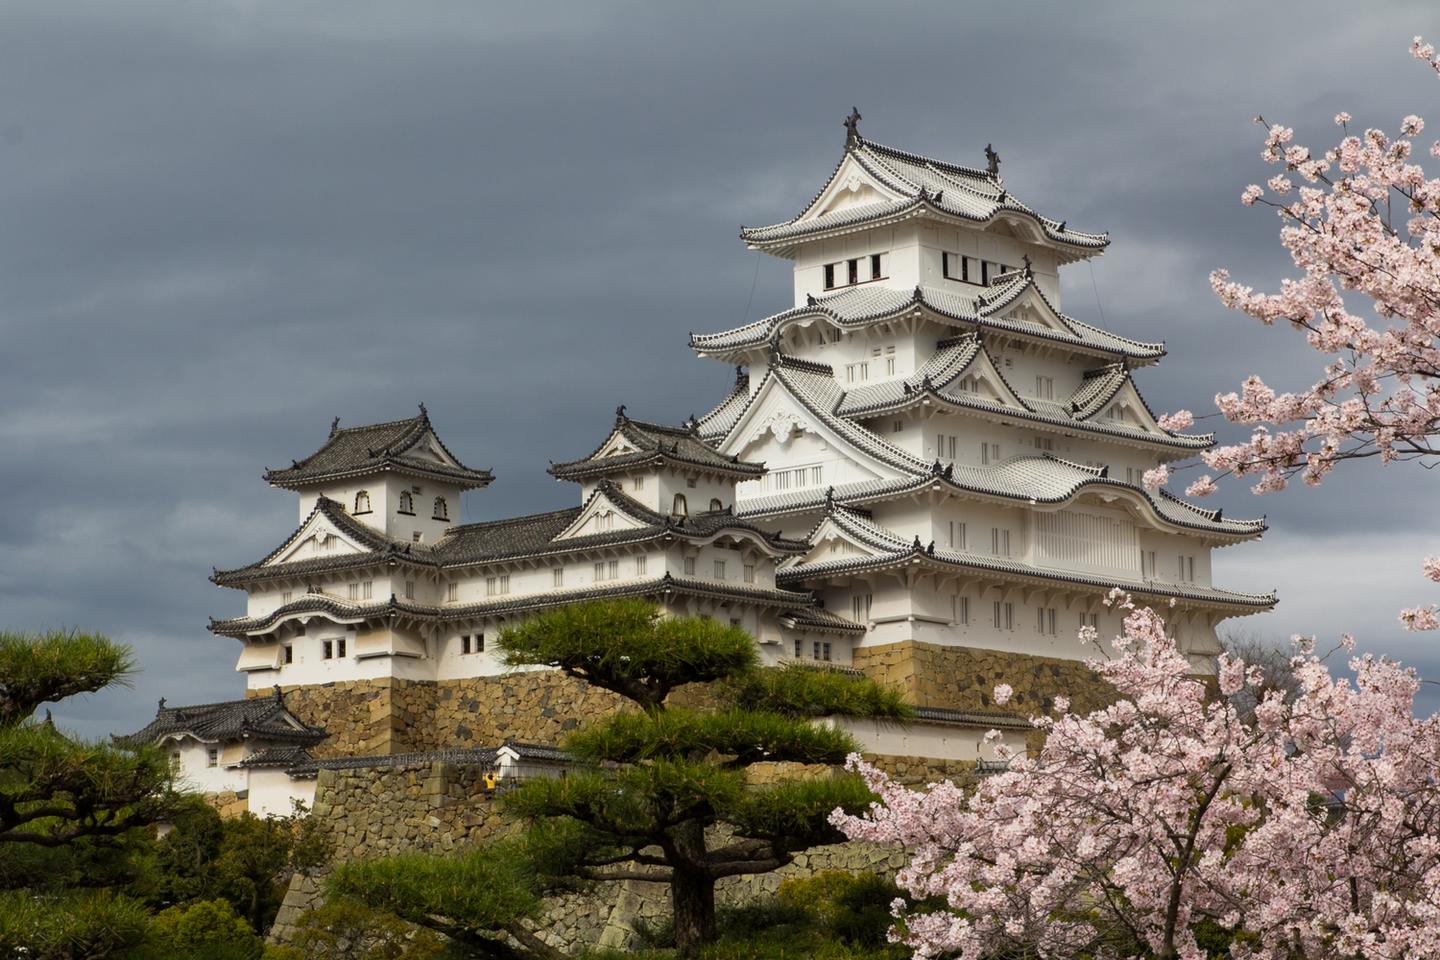 欧洲之外最值得一游的5座城堡建筑,日本姬路城好美